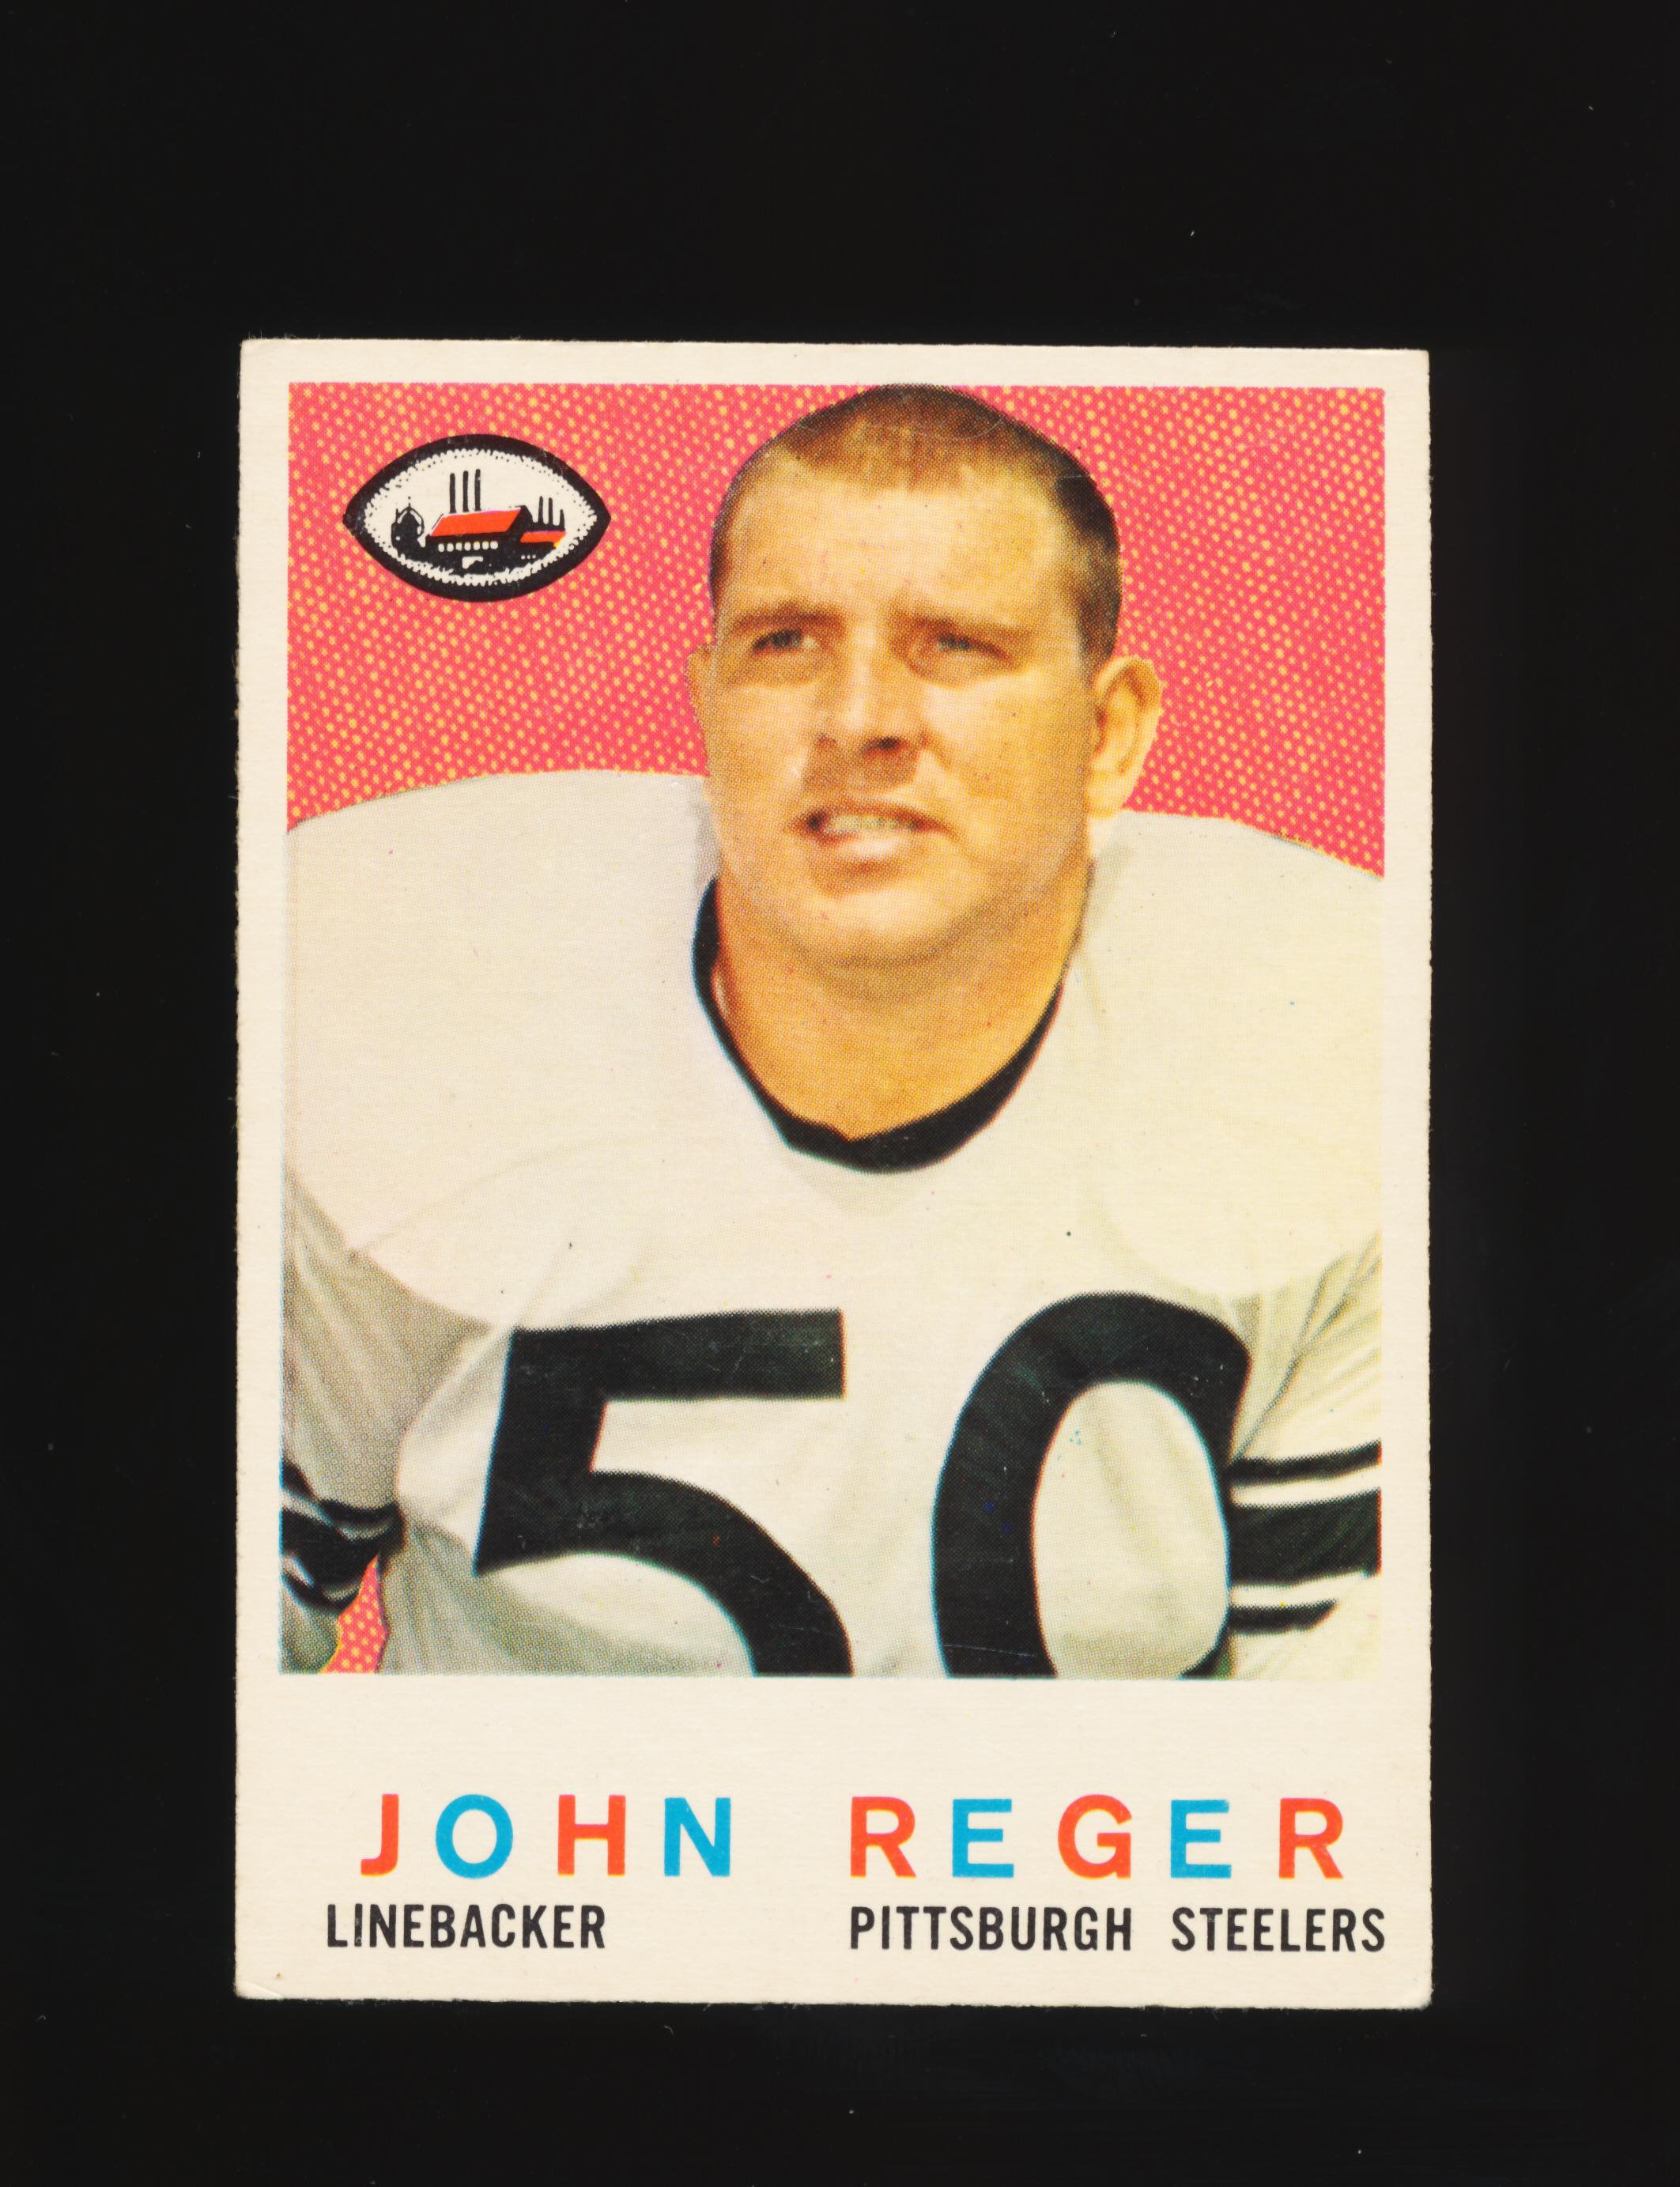 1959 Topps ROOKIE Football Card #124 Rookie John Reger Pittsburgh Steelers